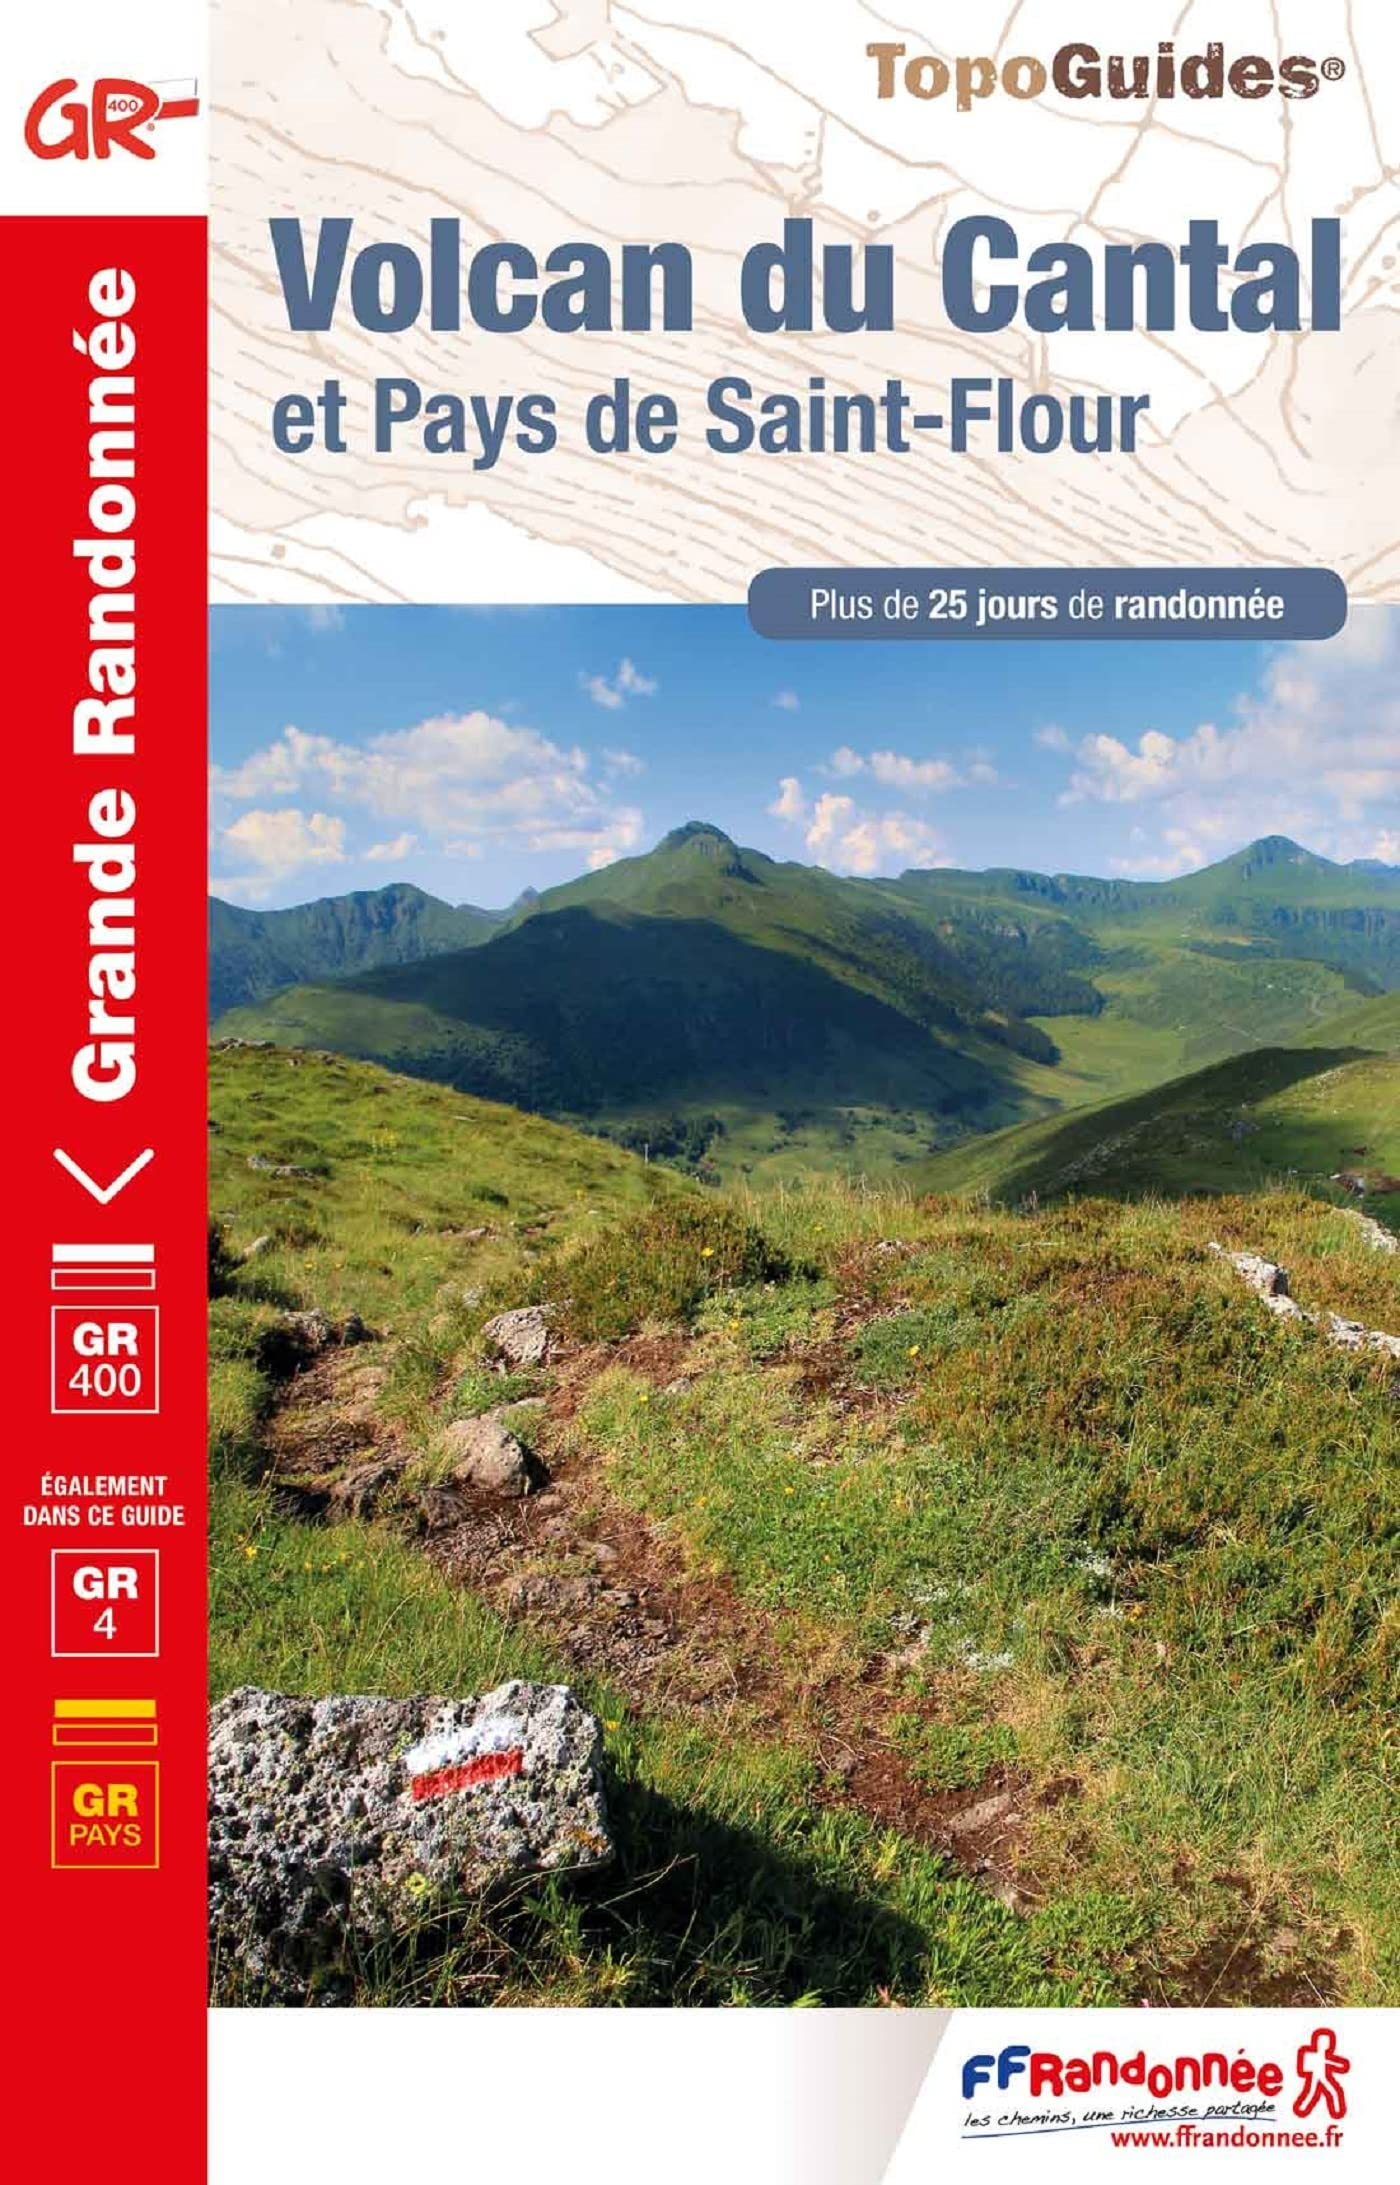 Volcan du Cantal et pays de Saint-Flour : GR 400, GR 4, GR pays : plus de 25 jours de randonnée